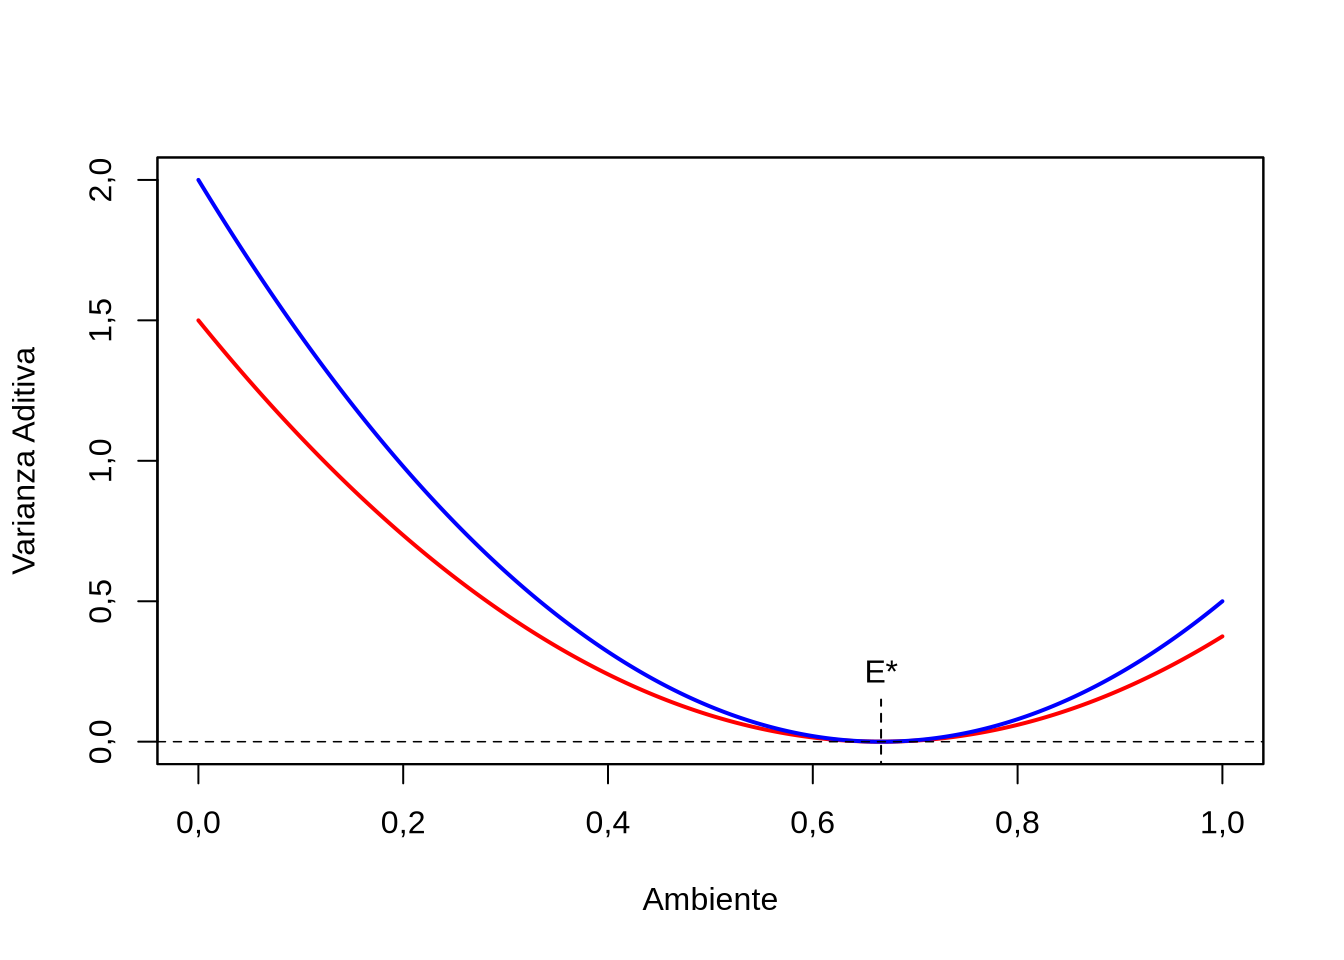 Variamnza aditiva de la característisca en función del ambiente \(E\), para dos frecuencias alélicas del alelo \(A_1\). En rojo \(p=0,25\), en azul \(p=0,5\). Como la función de varianza aditiva es igual a \(\sigma^2_A=2pq[2-3E]^2\), cuando \(E=\frac{2}{3}=E^{\star}\) la varianza se hace cero.